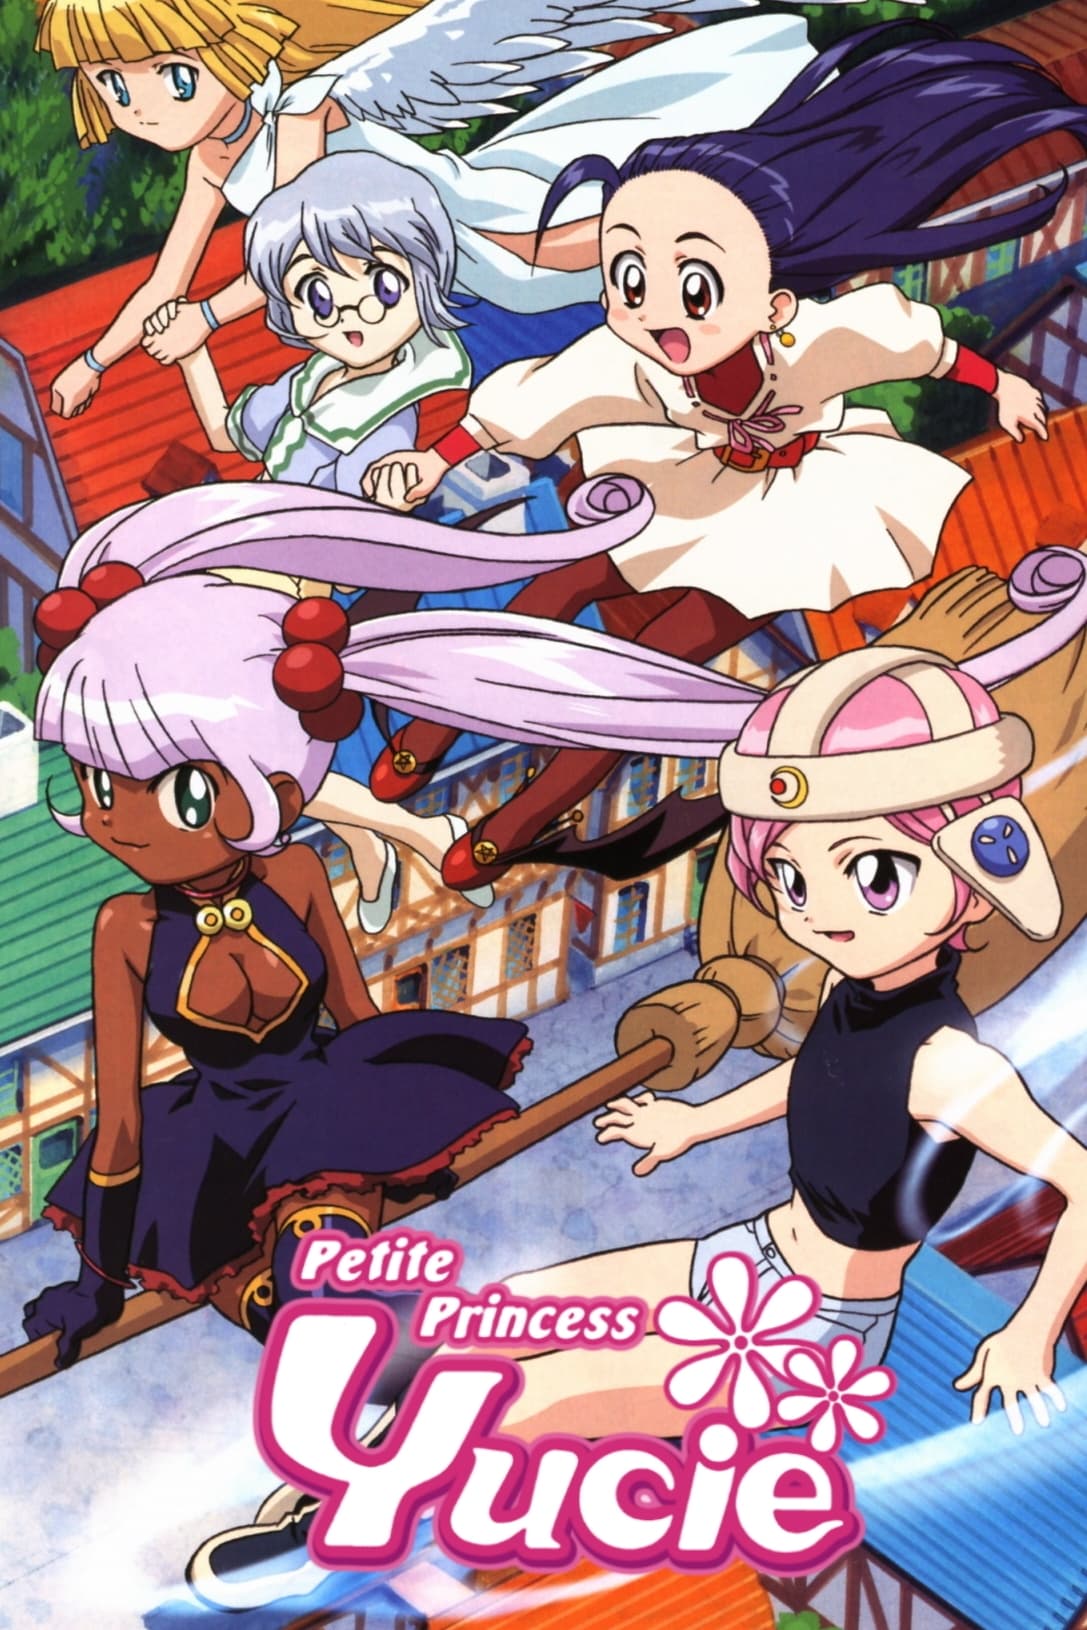 Petite Princess Yucie (2002)